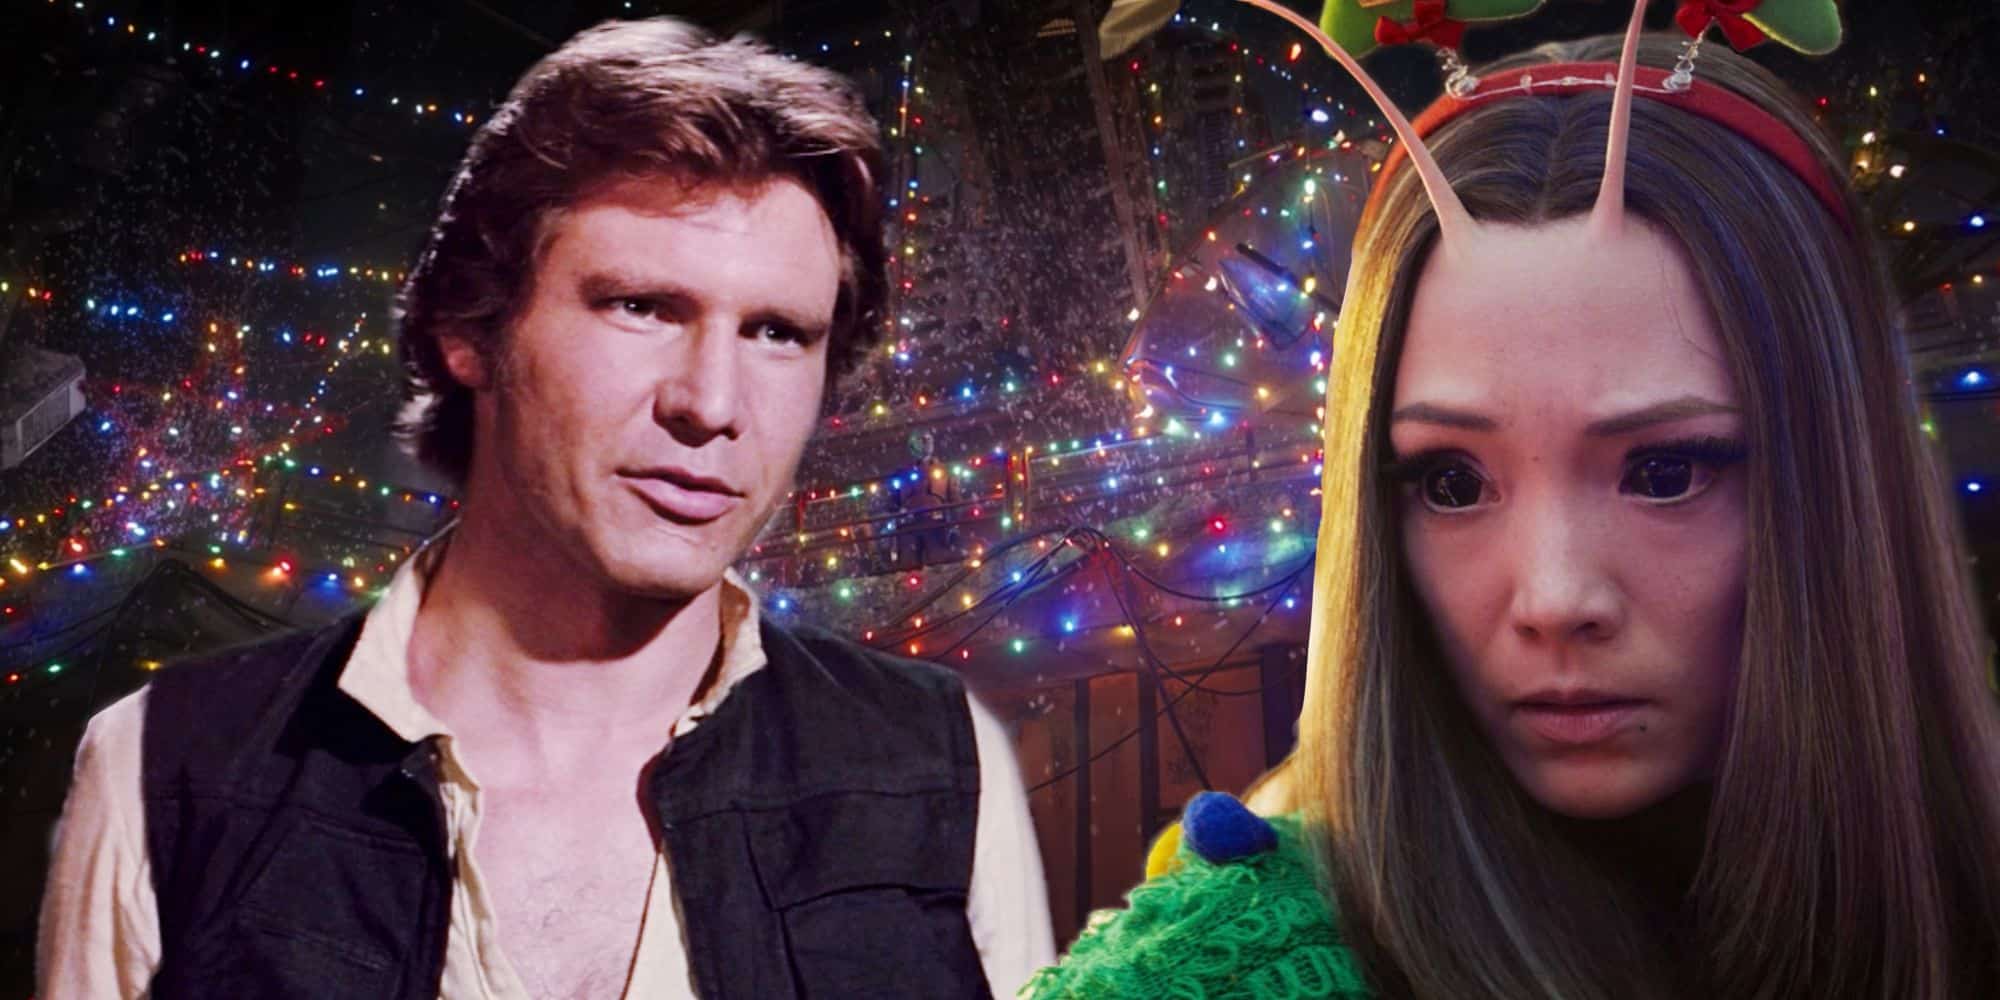 El especial de Navidad de GOTG rinde homenaje a la imagen principal de Low Point de Star Wars con Mantis y Han Solo frente a las luces navideñas.